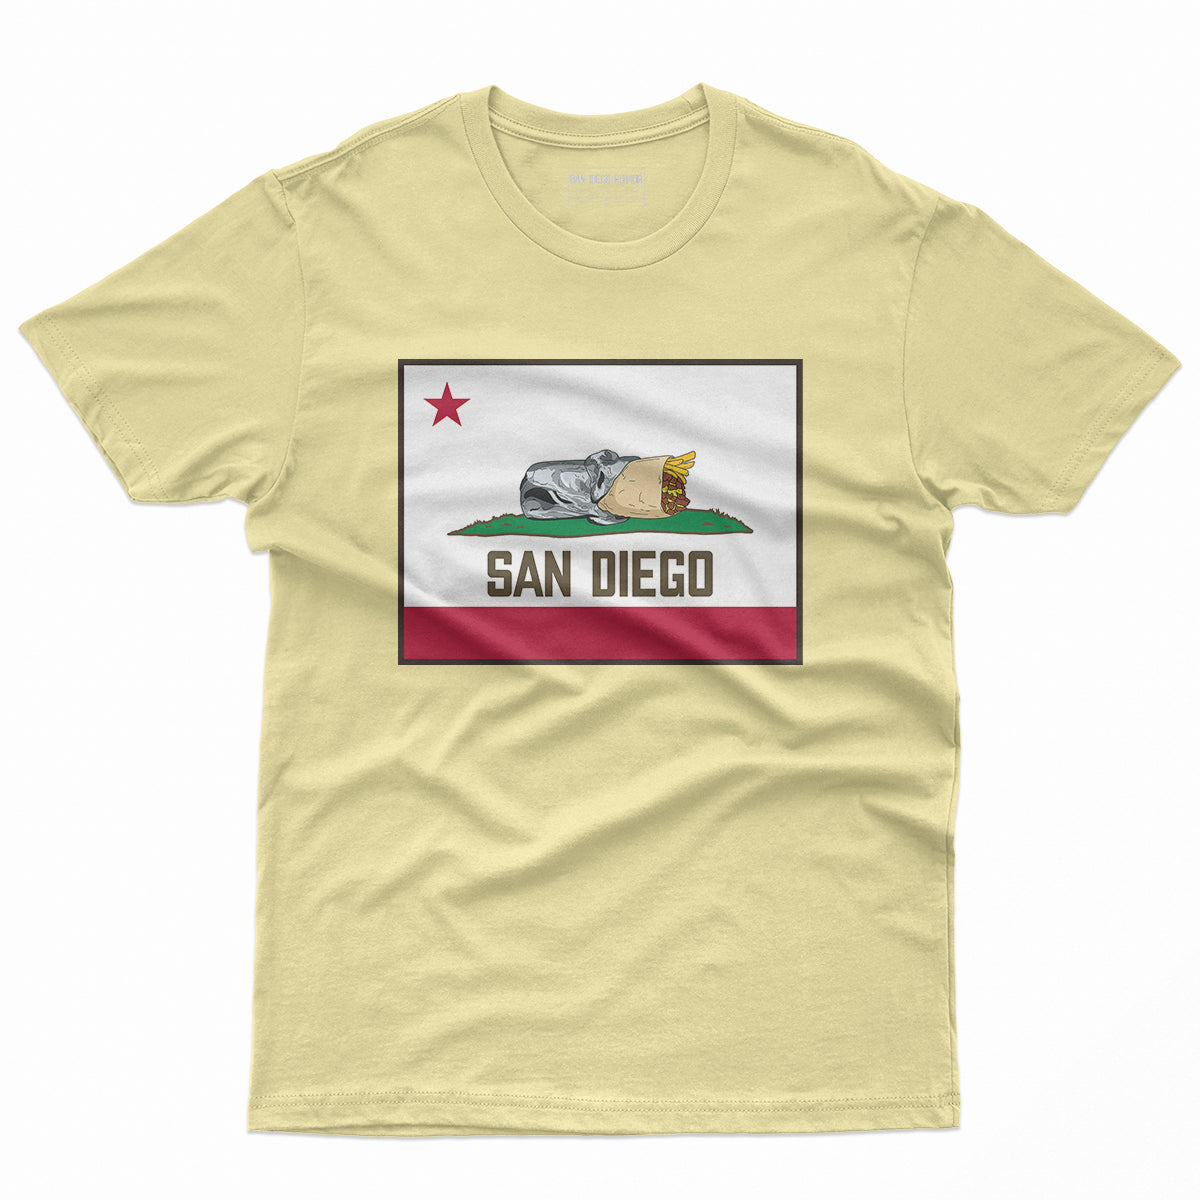 San Diego, Shirts